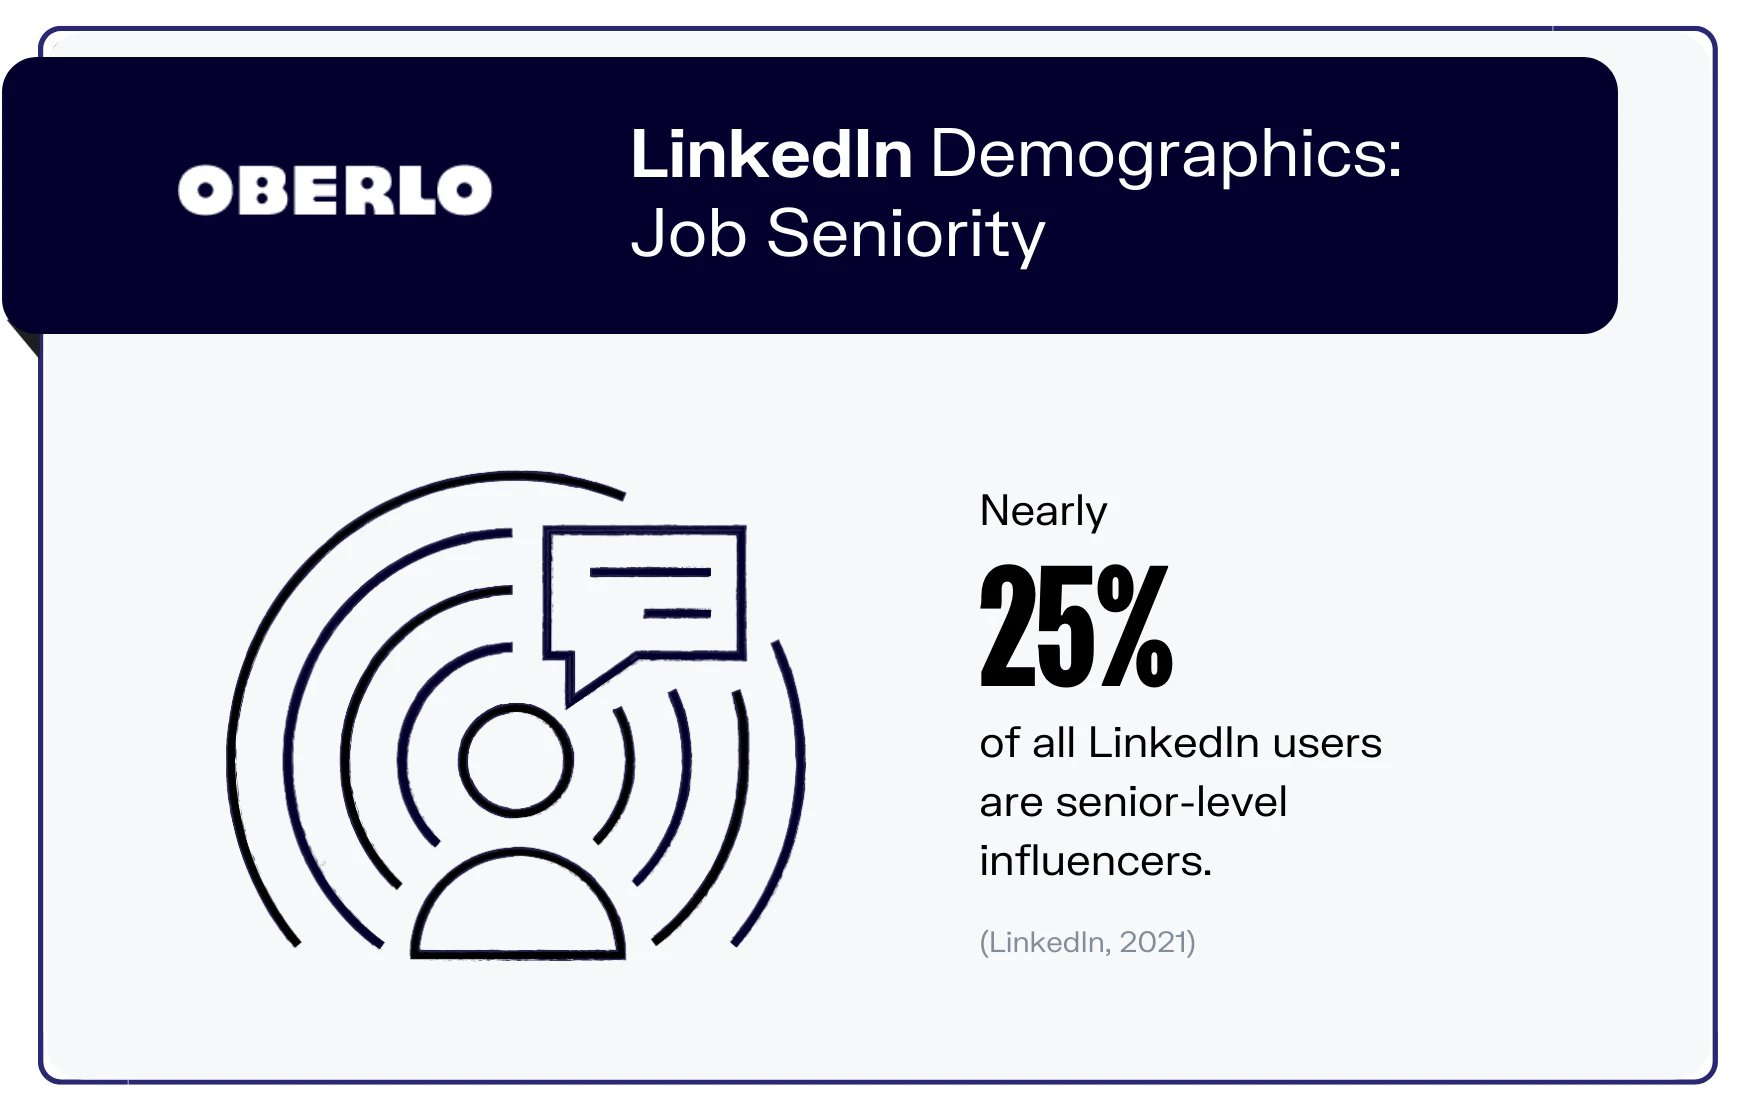 所有社交媒体营销人员应该知道的10个基本的LinkedIn统计数据（2022）